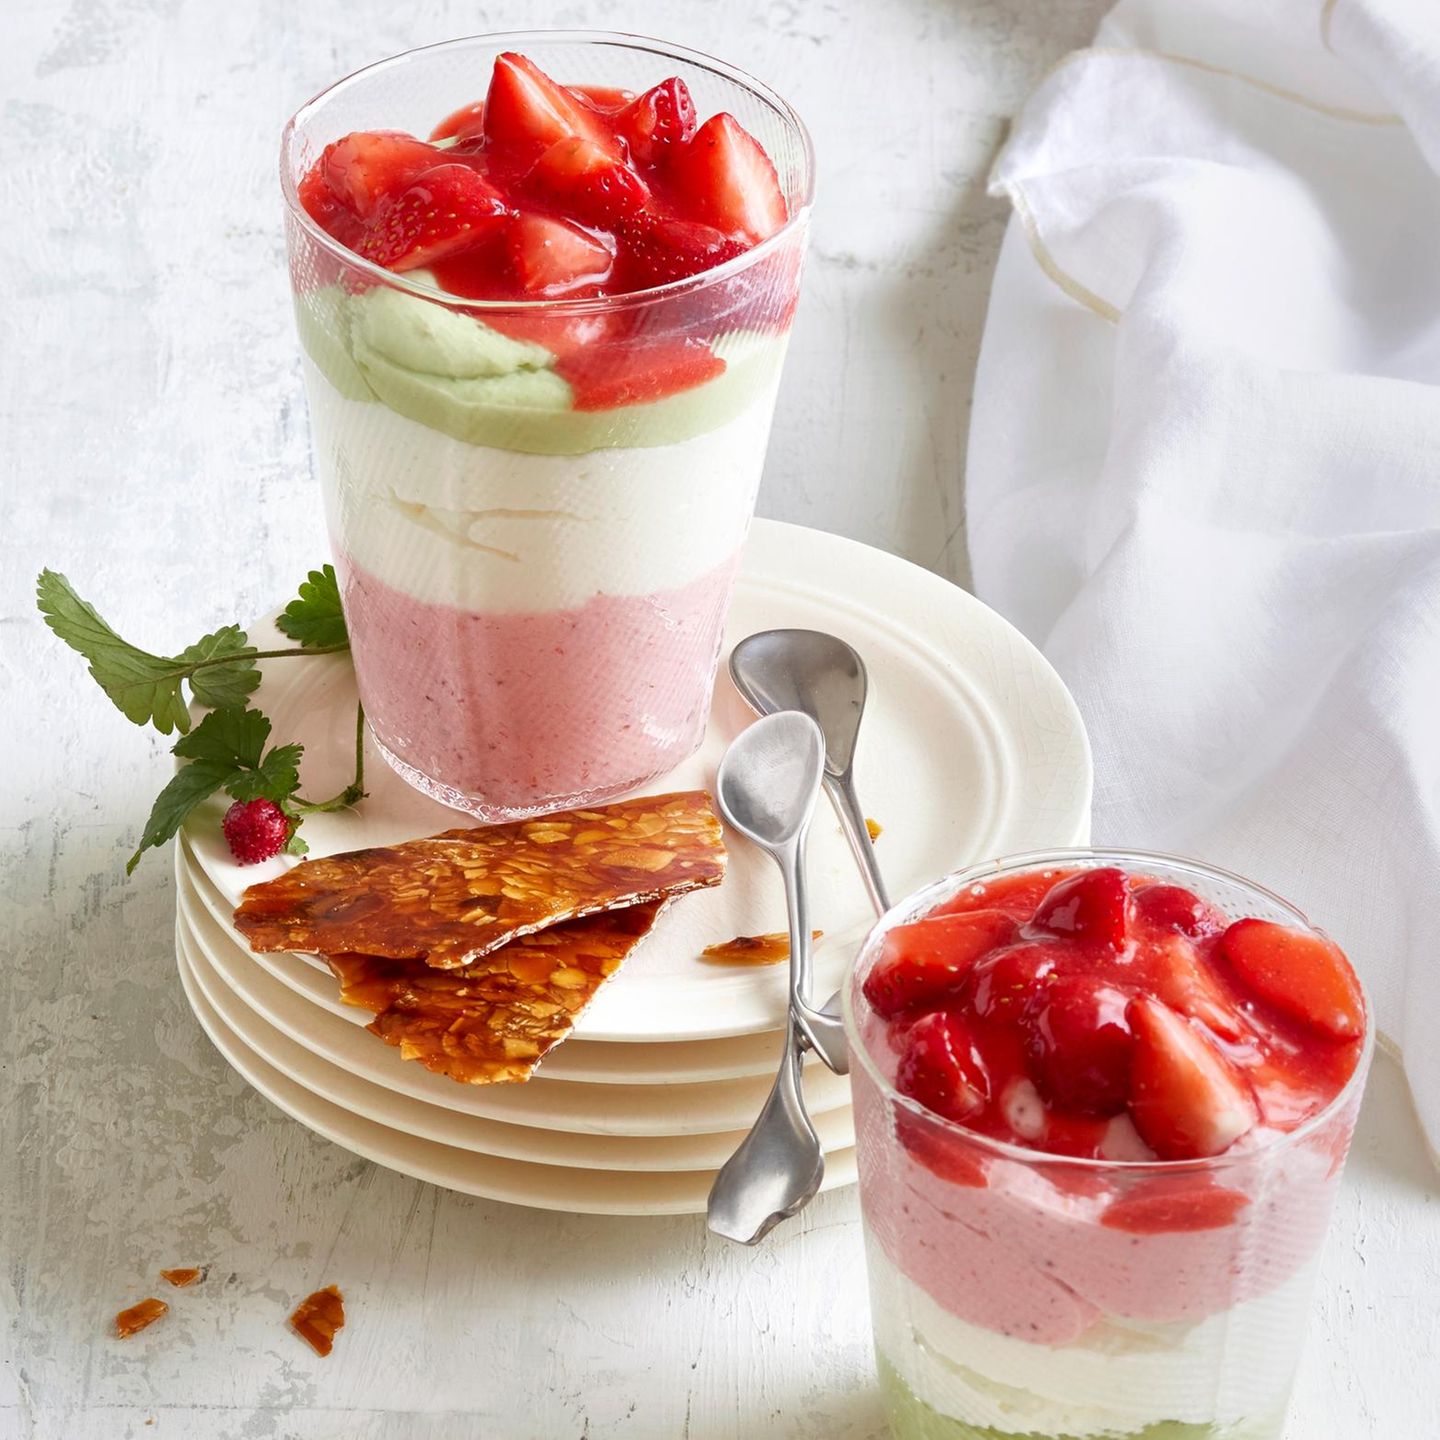 Schichtcreme-Dessert mit Erdbeer-Ragout